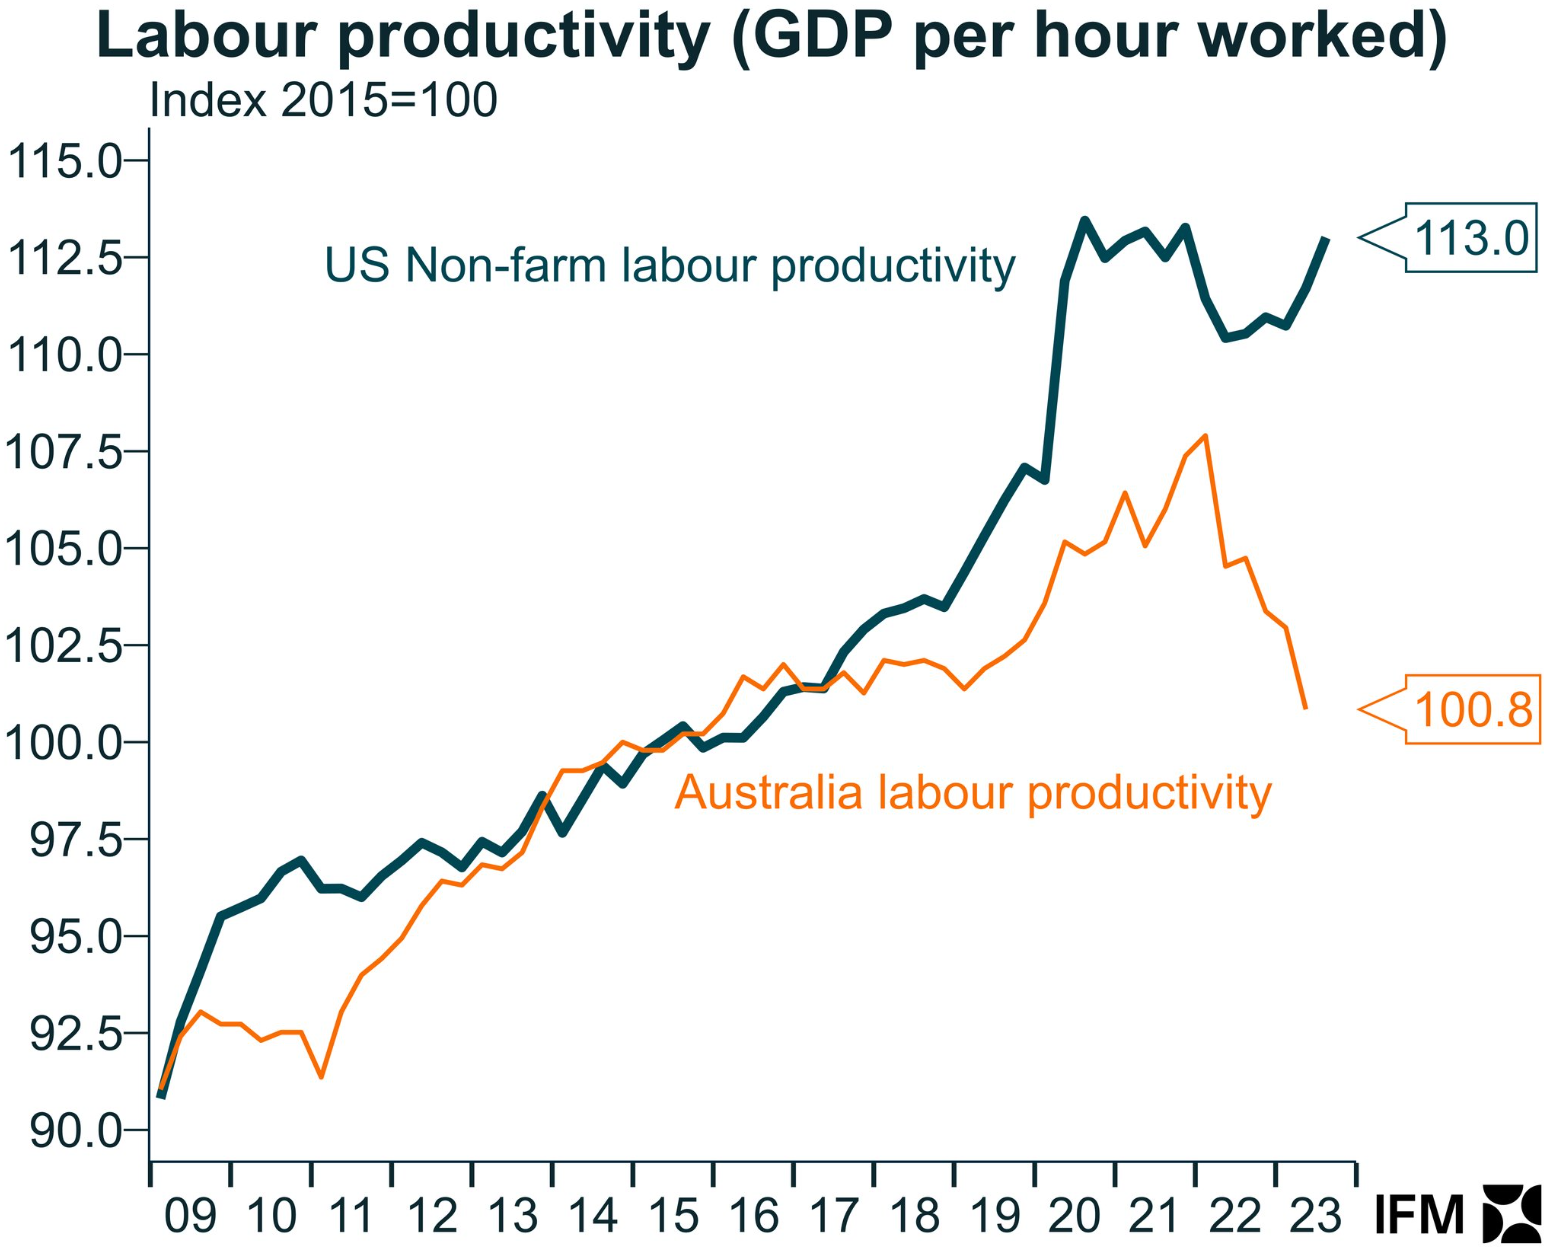 Labour productivity